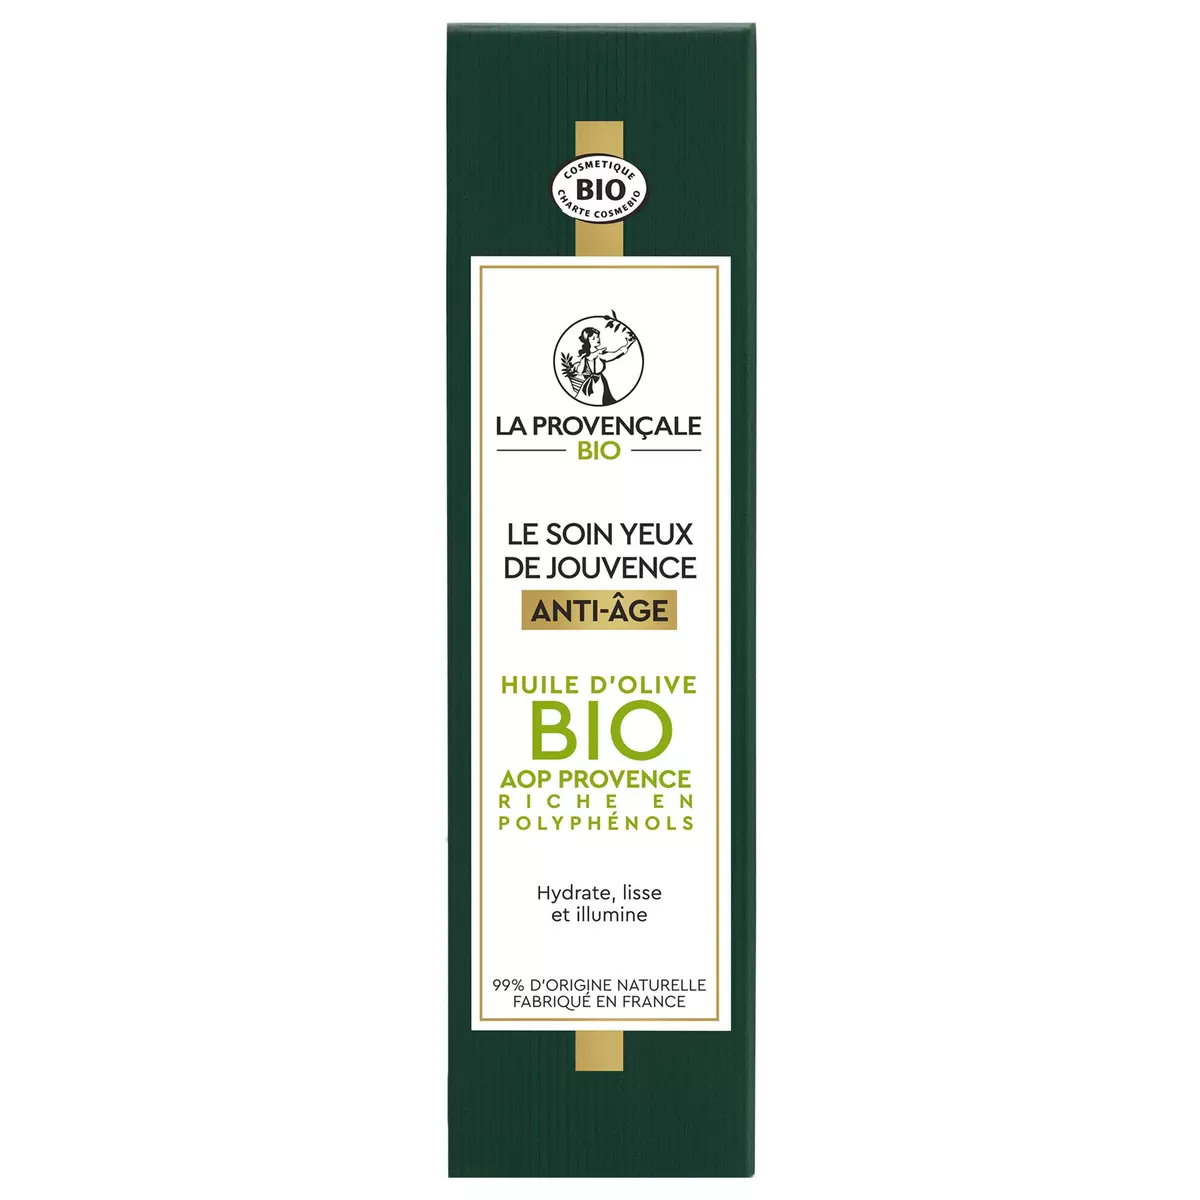 LA PROVENCALE BIO Soin de jouvence yeux anti-âge huile d'olive bio 15ml